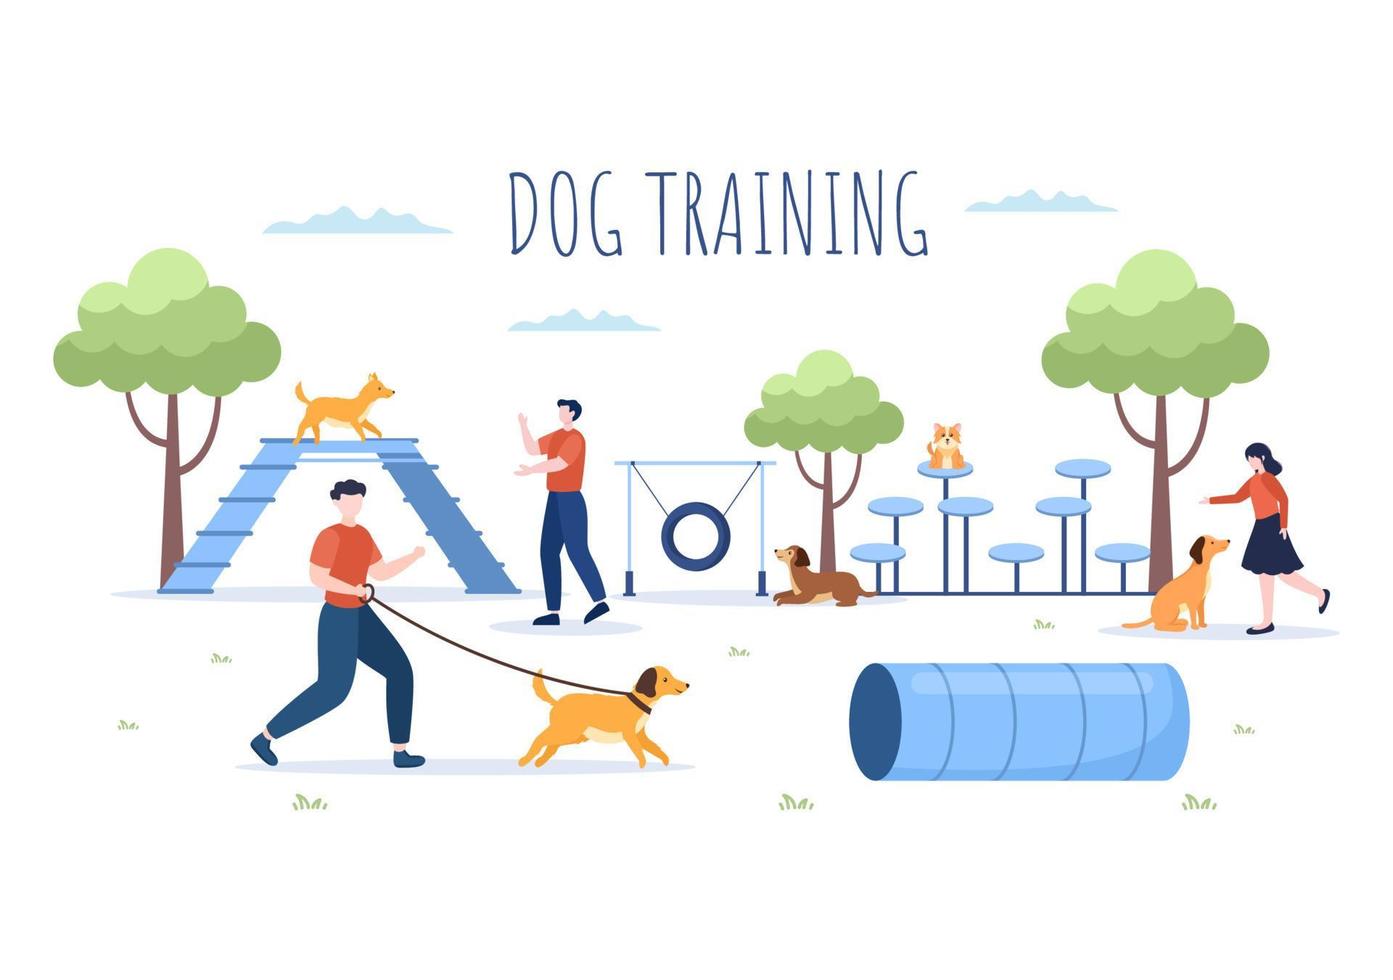 centro di addestramento per cani al parco giochi con istruttore che insegna agli animali domestici o gioca per trucchi e abilità di salto nell'illustrazione piana del fondo del fumetto vettore